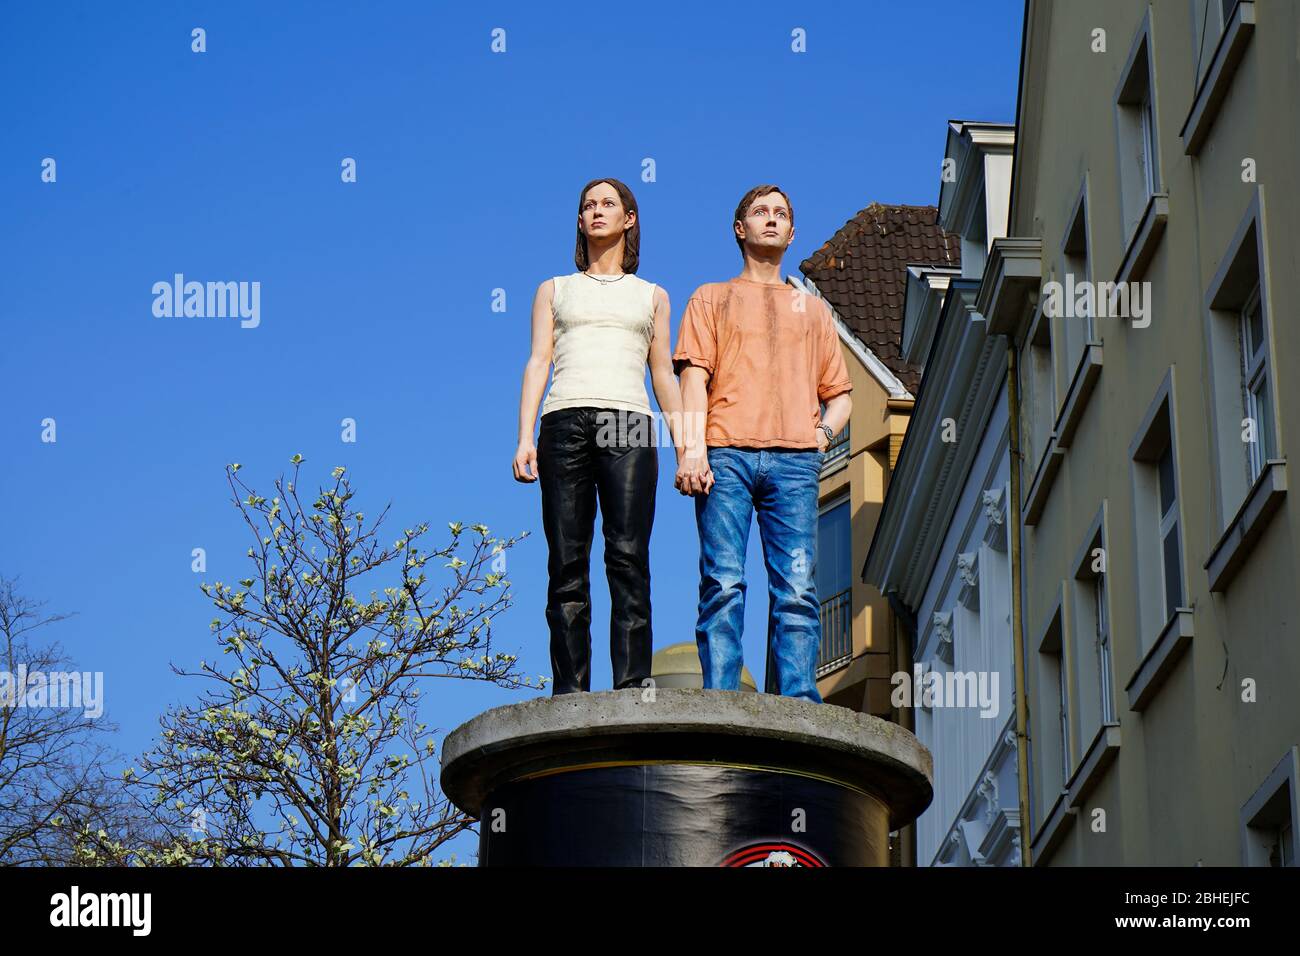 Sogenannte "Säulenheilige" (lebensechte Skulpturen auf Werbungssäulen). Künstler: Christoph Pöggeler. Lage: Düsseldorf, Burgplatz, Altstadt. Stockfoto